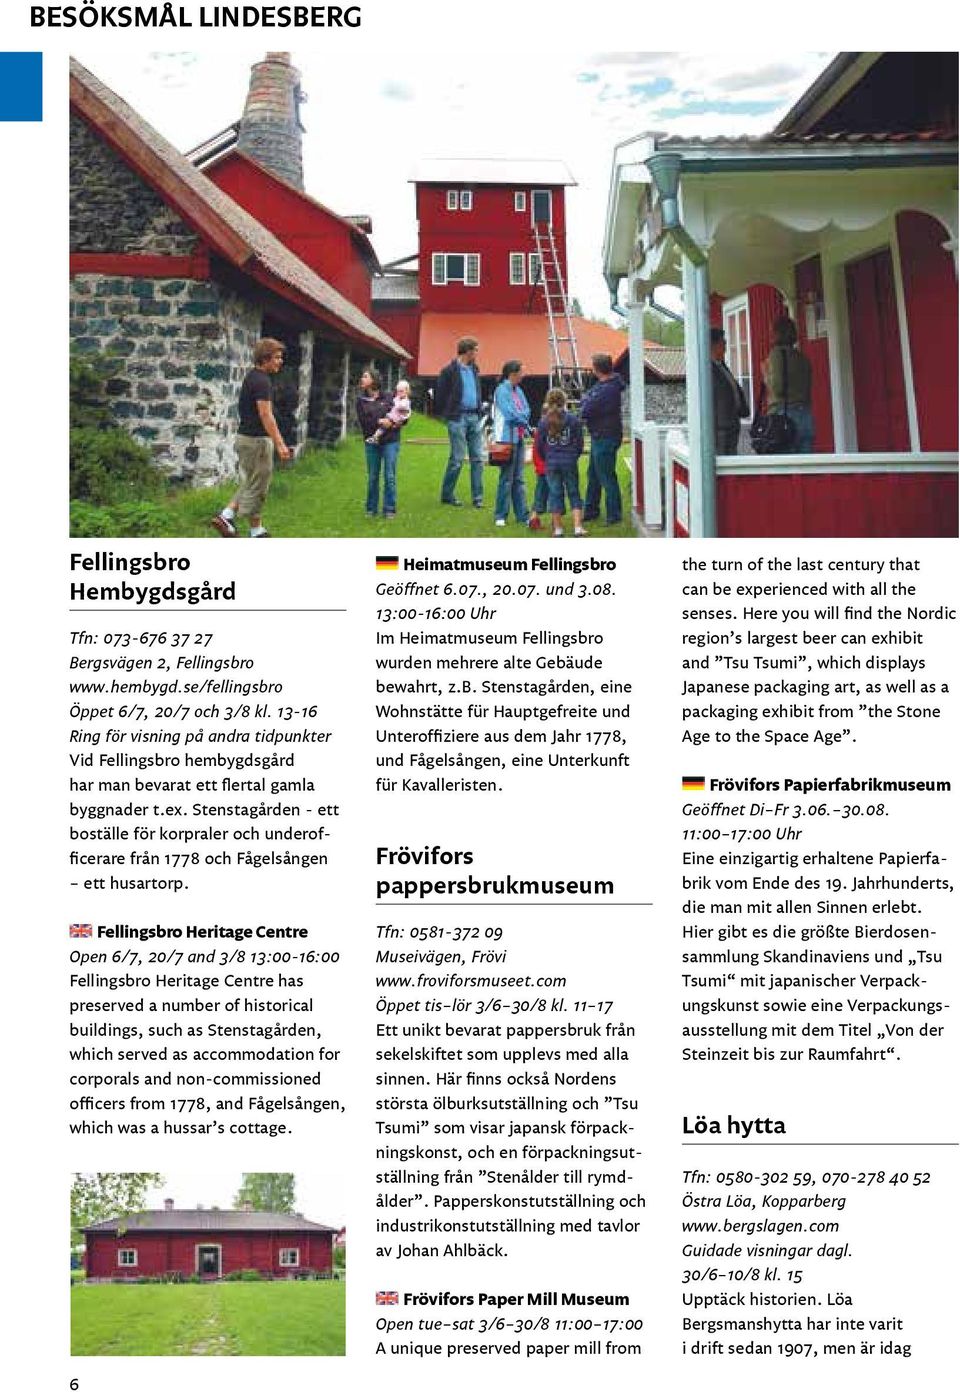 Stenstagården - ett boställe för korpraler och underofficerare från 1778 och Fågelsången ett husartorp.